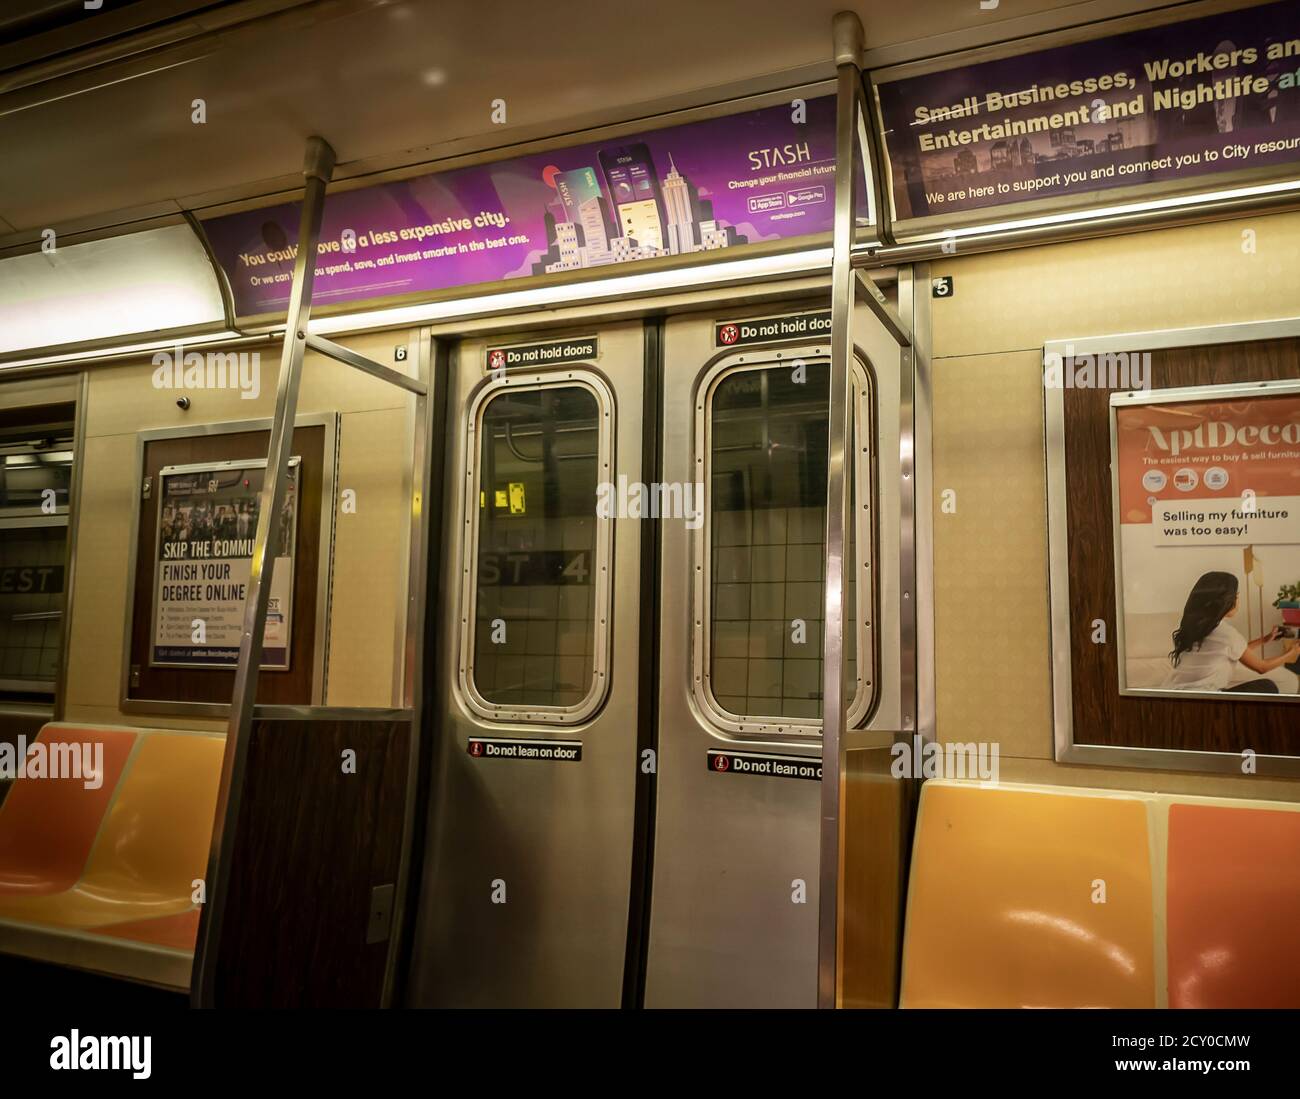 Publicité pour Stash, une start-up financière personnelle fintech, dans le métro de New York le samedi 19 septembre 2020. La stash permet aux utilisateurs d'investir progressivement de petites quantités dans des parts fractionnaires d'actions et d'ETF. (© Richard B. Levine) Banque D'Images